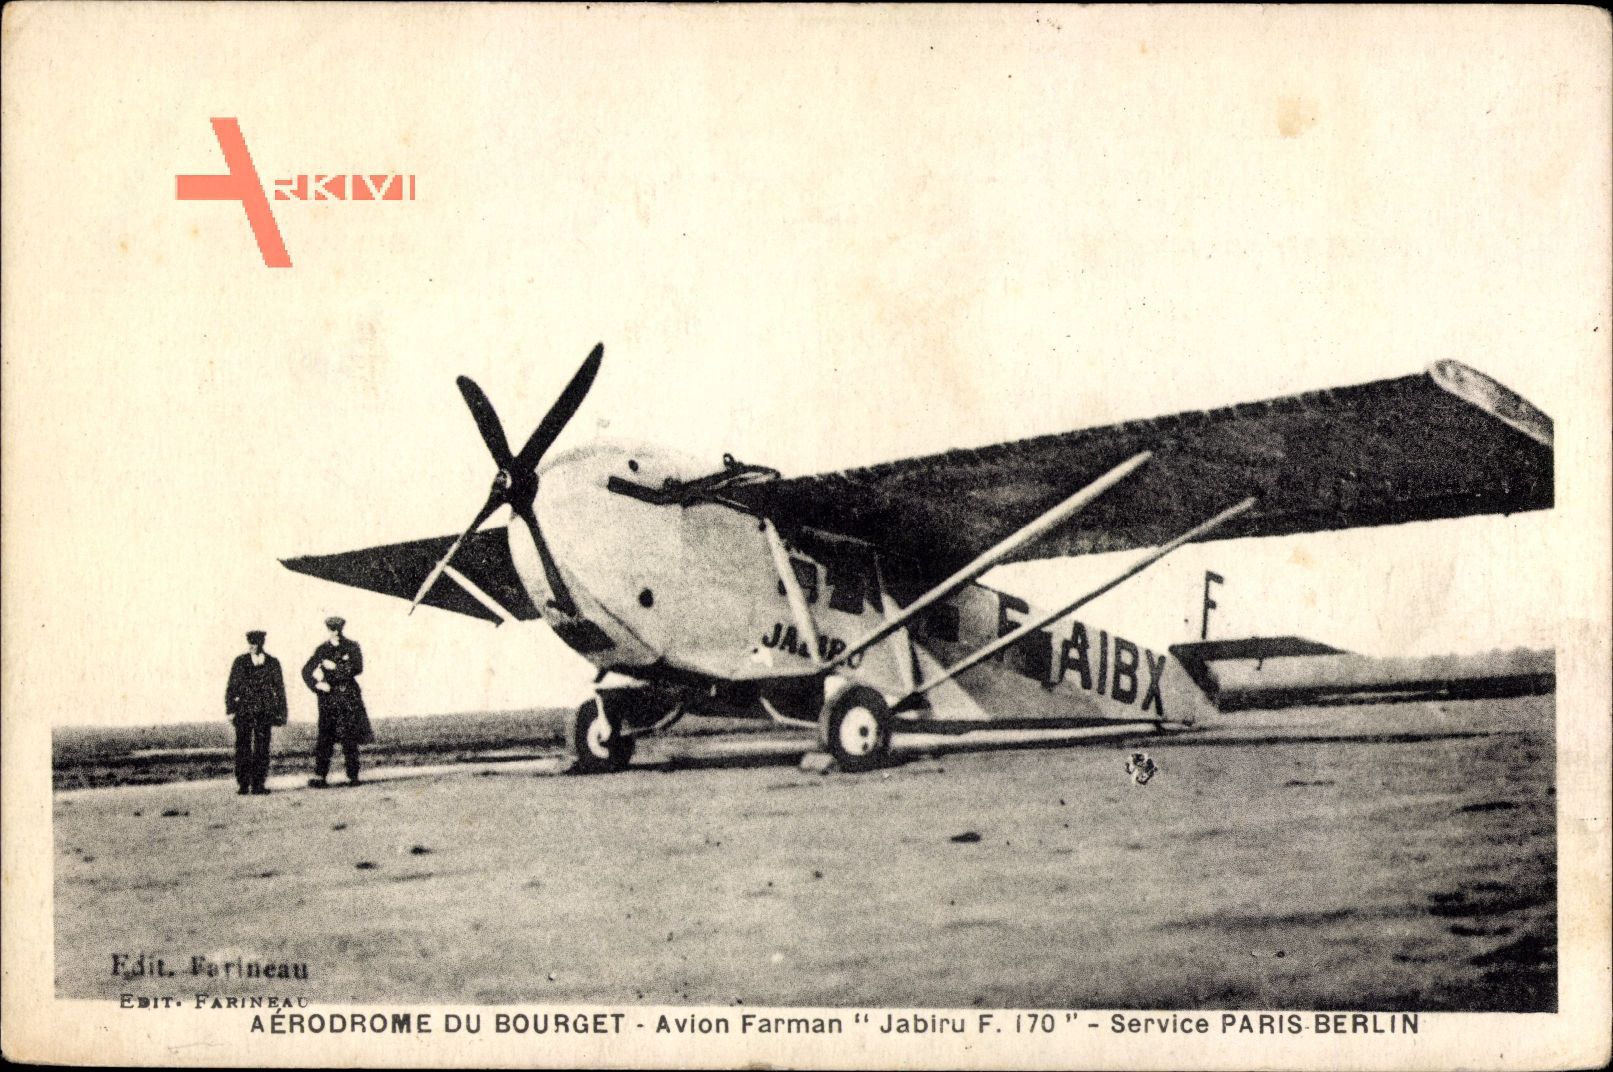 Aerodrome de Bourget, Avion Farman, Jabiru F 170, Service Paris Berlin